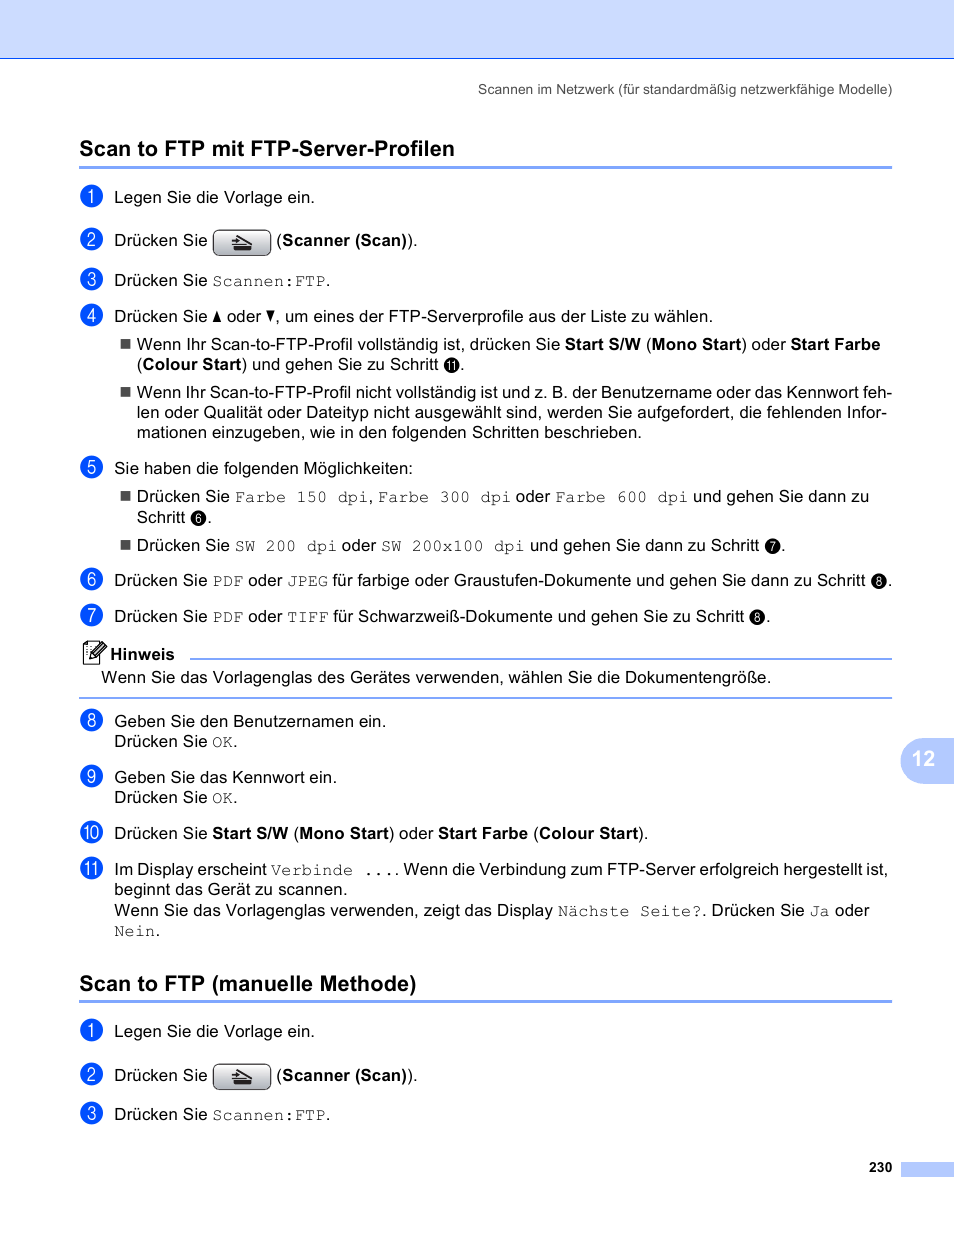 Scan to ftp mit ftp-server-profilen, Scan to ftp (manuelle methode) | Brother MFC-6490CW Benutzerhandbuch | Seite 239 / 251